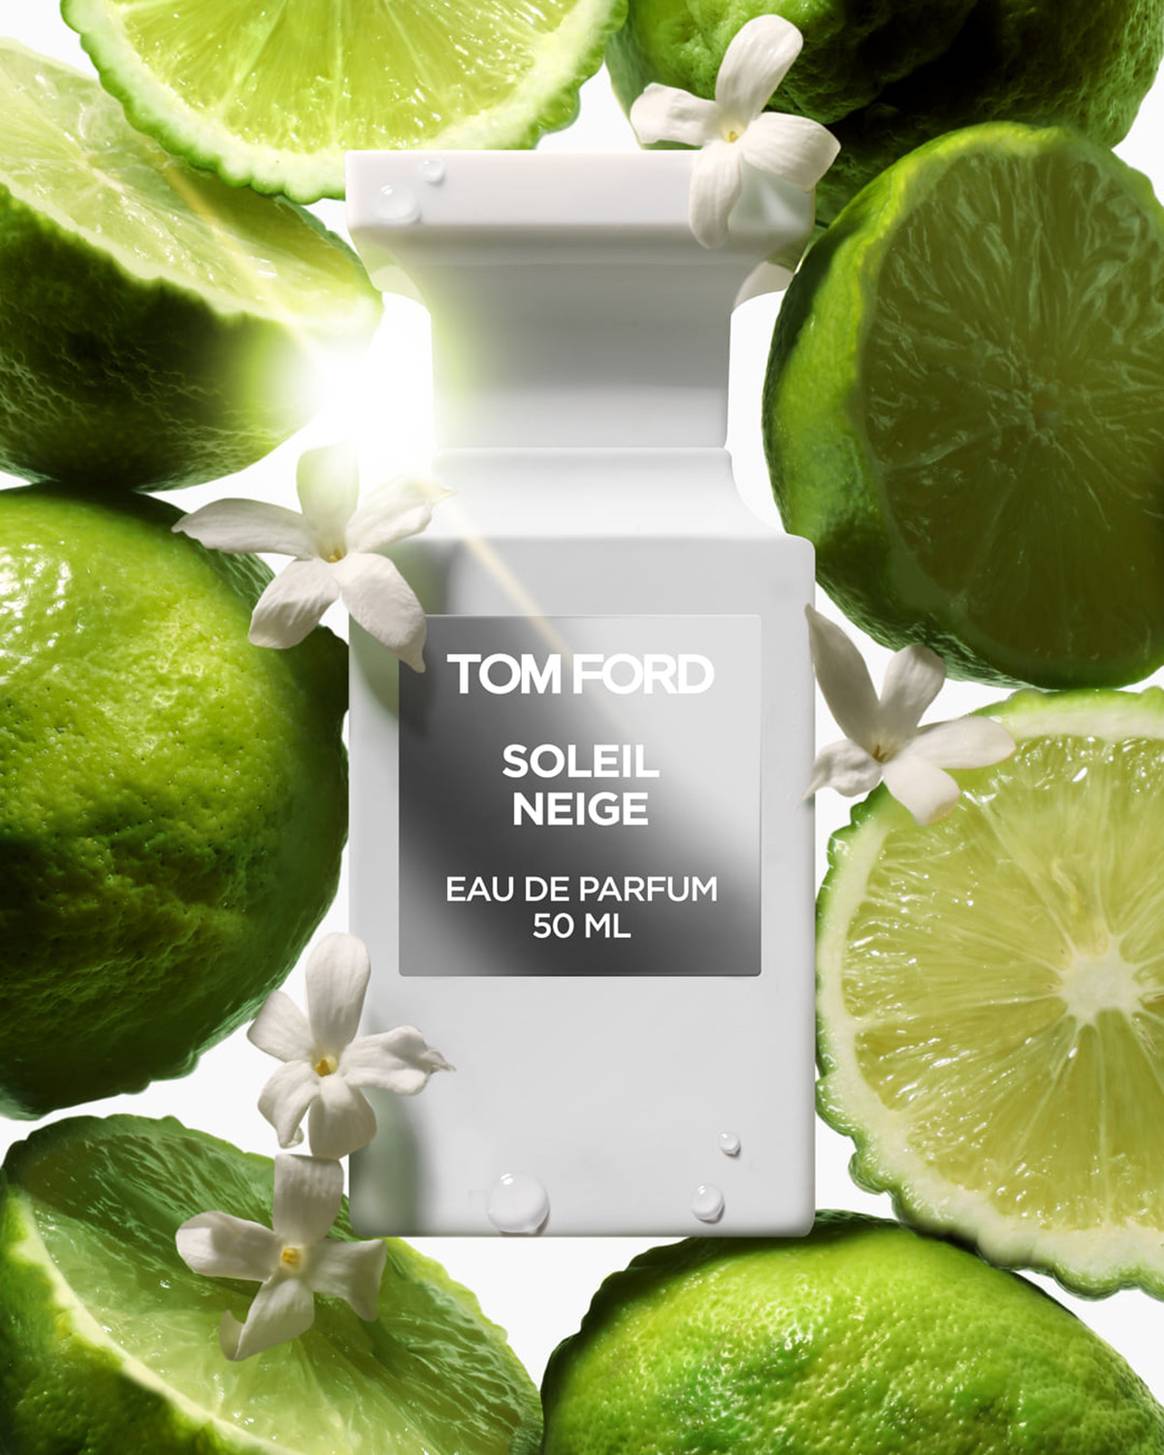 Photo Credits: Imagen promocional de uno de los perfumes de la línea “Beauty” de Tom Ford desarrollada por Estée Lauder. Tom Ford, página oficial de Facebook.